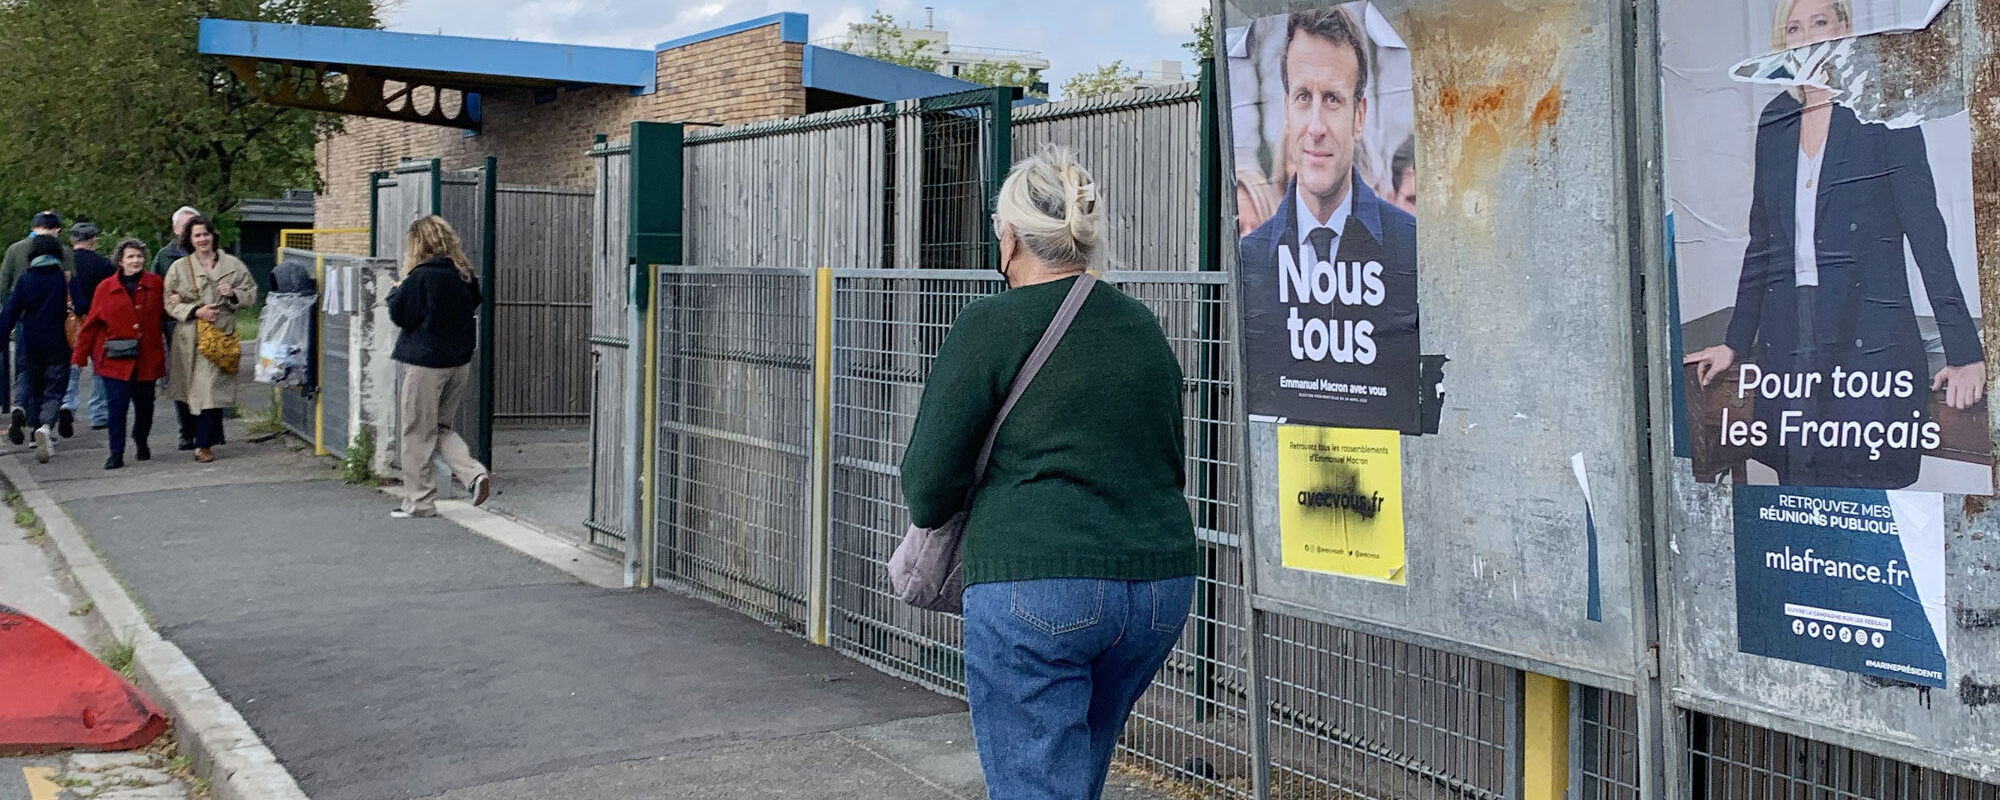 Emmanuel Macron réélu président, les Bordelais ont fait barrage à l’extrême droite